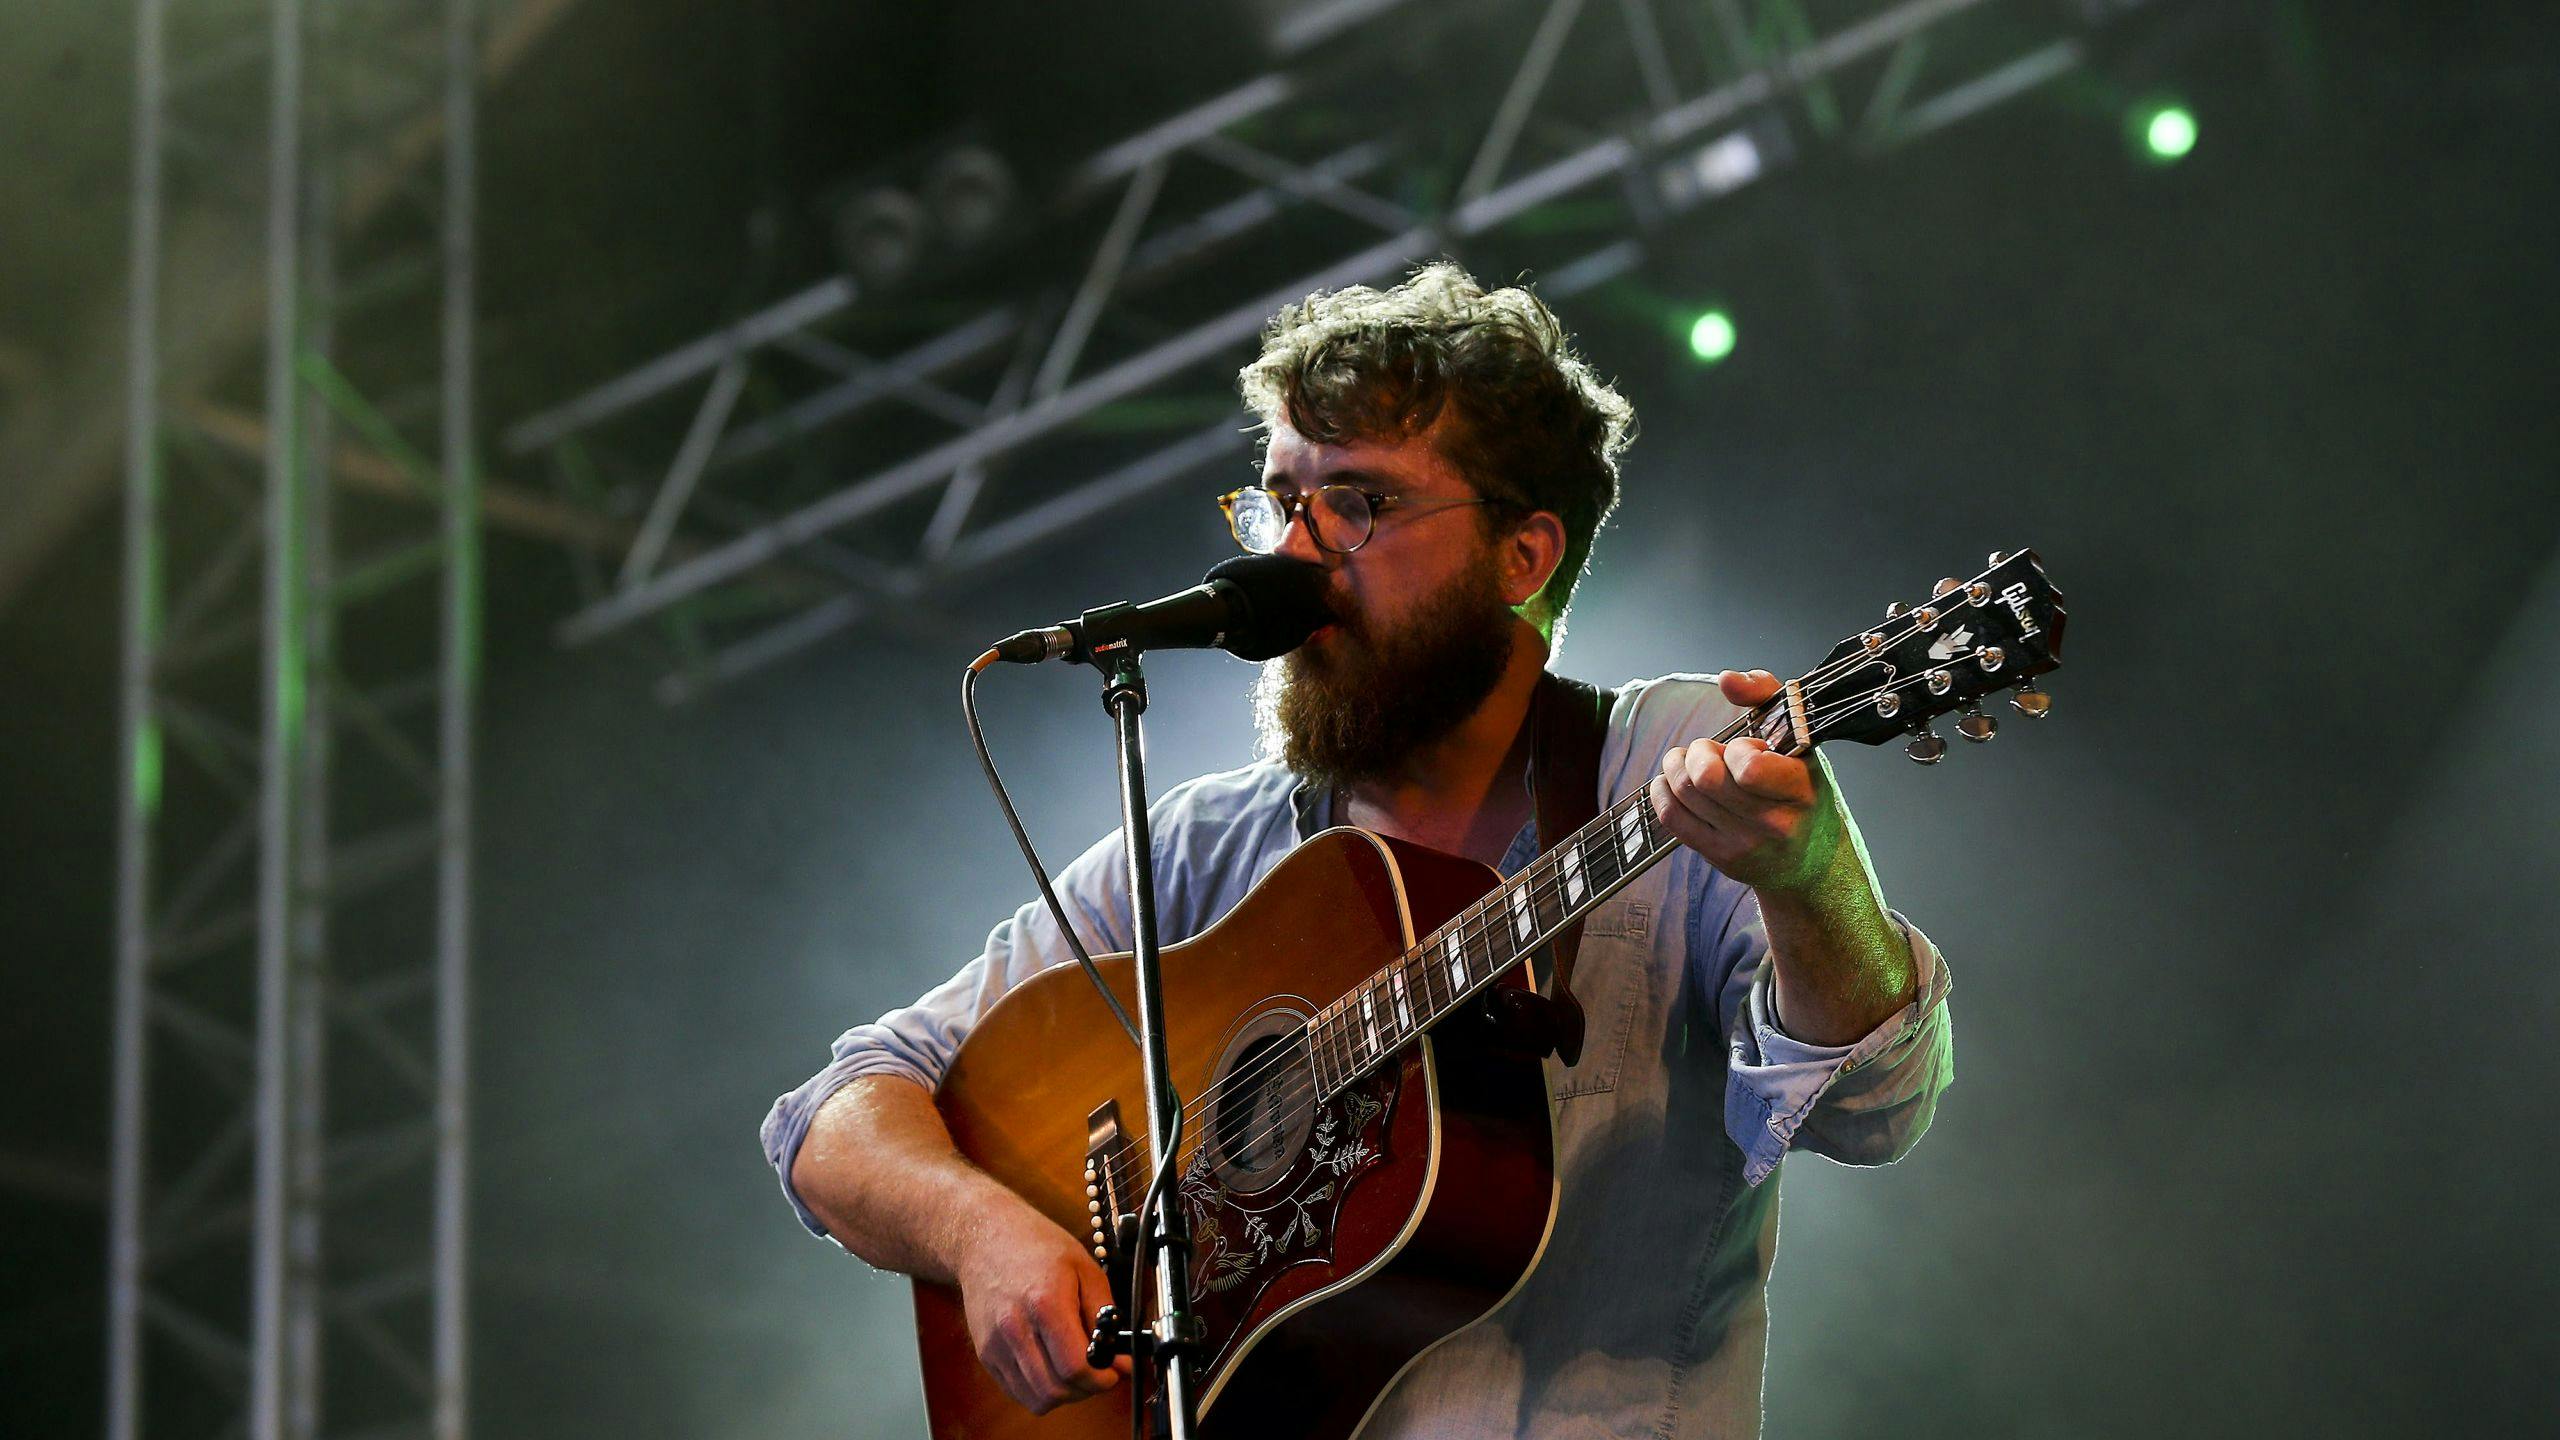 De zanger van de Britse band Bear's Den, Andrew Davie, treedt op tijden het Alive Festival in Lissabon, Portugal.